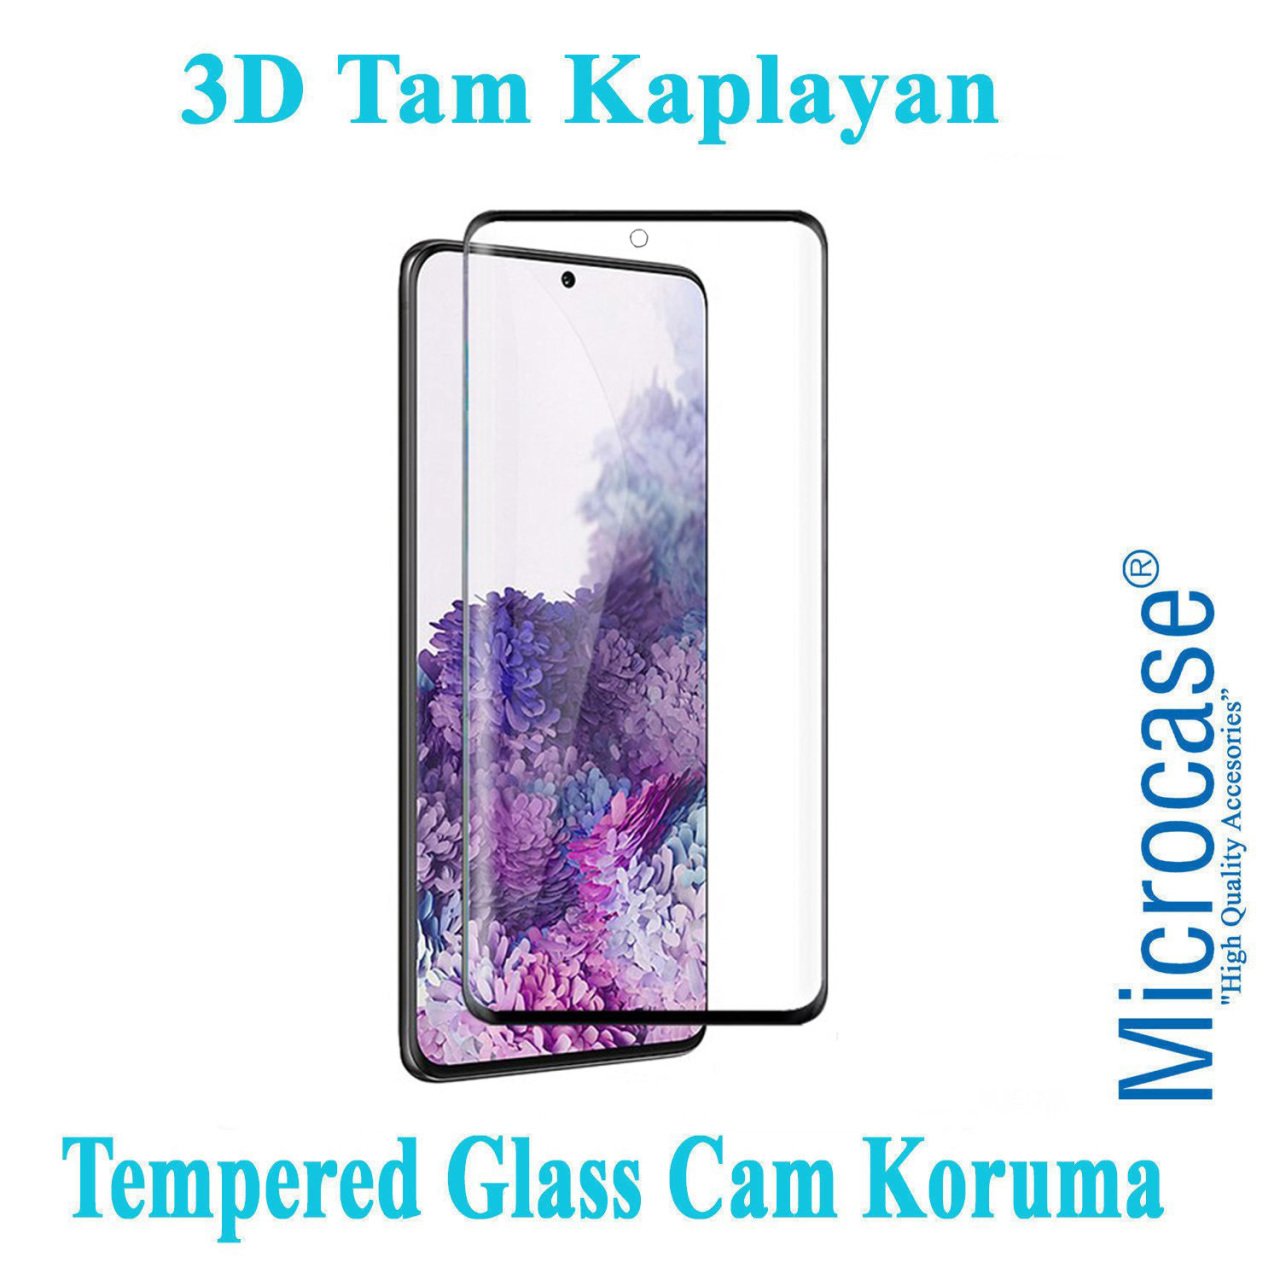 Microcase Samsung Galaxy S20 3D Curved Tam Kaplayan Tempered Glass Cam Koruma - Siyah